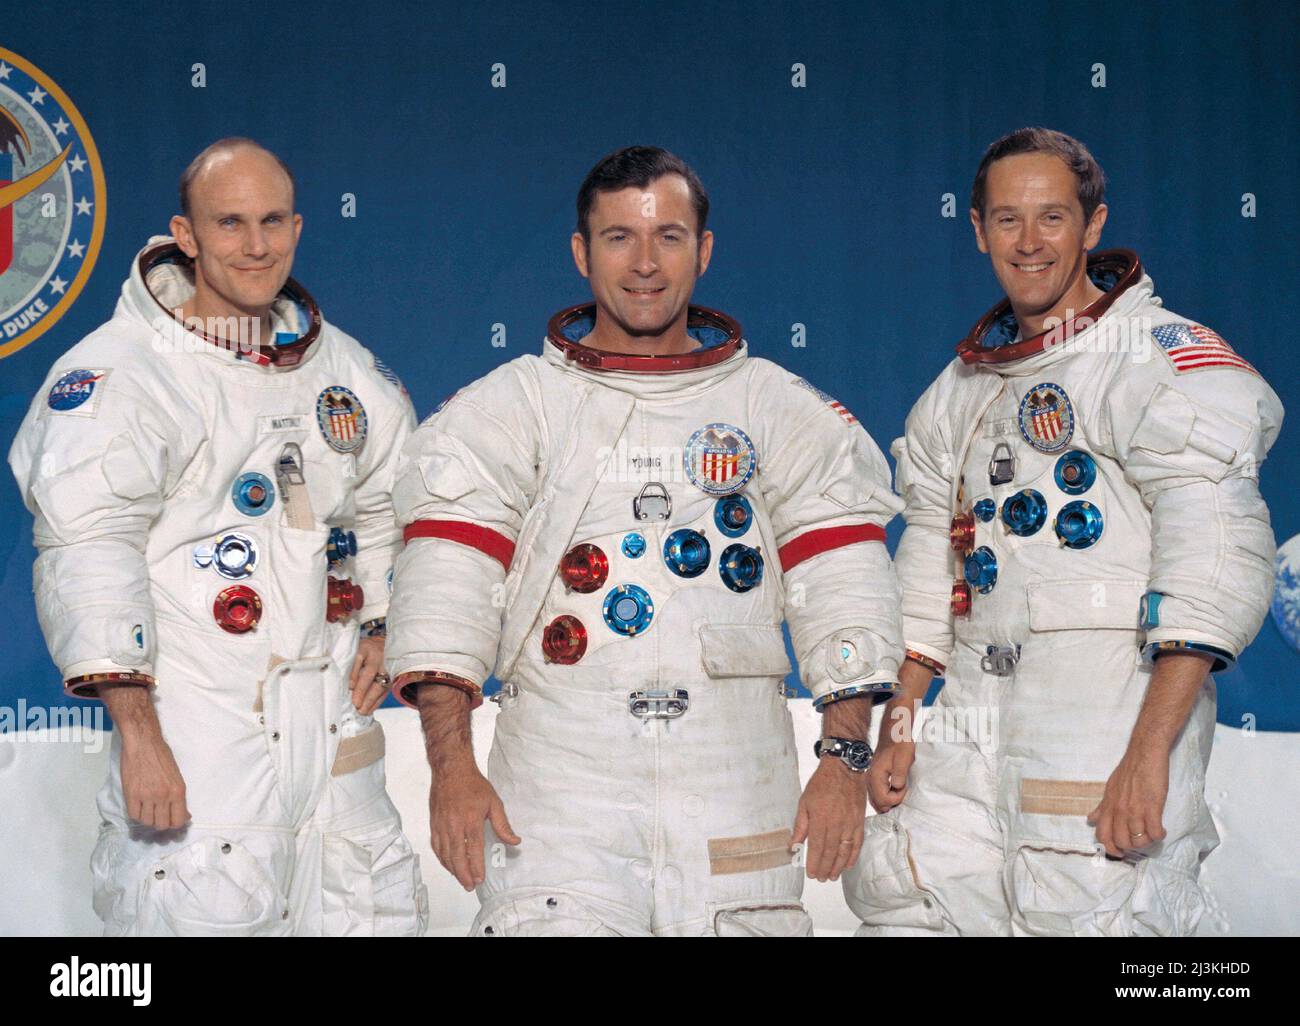 Die Hauptmannschaft der Mondlandemission Apollo 16. Von links nach rechts: Thomas Mattingly, Kommandomodulpilot; John Young, Kommandant; und Charles Duke, Mondmodul-Pilot. Stockfoto